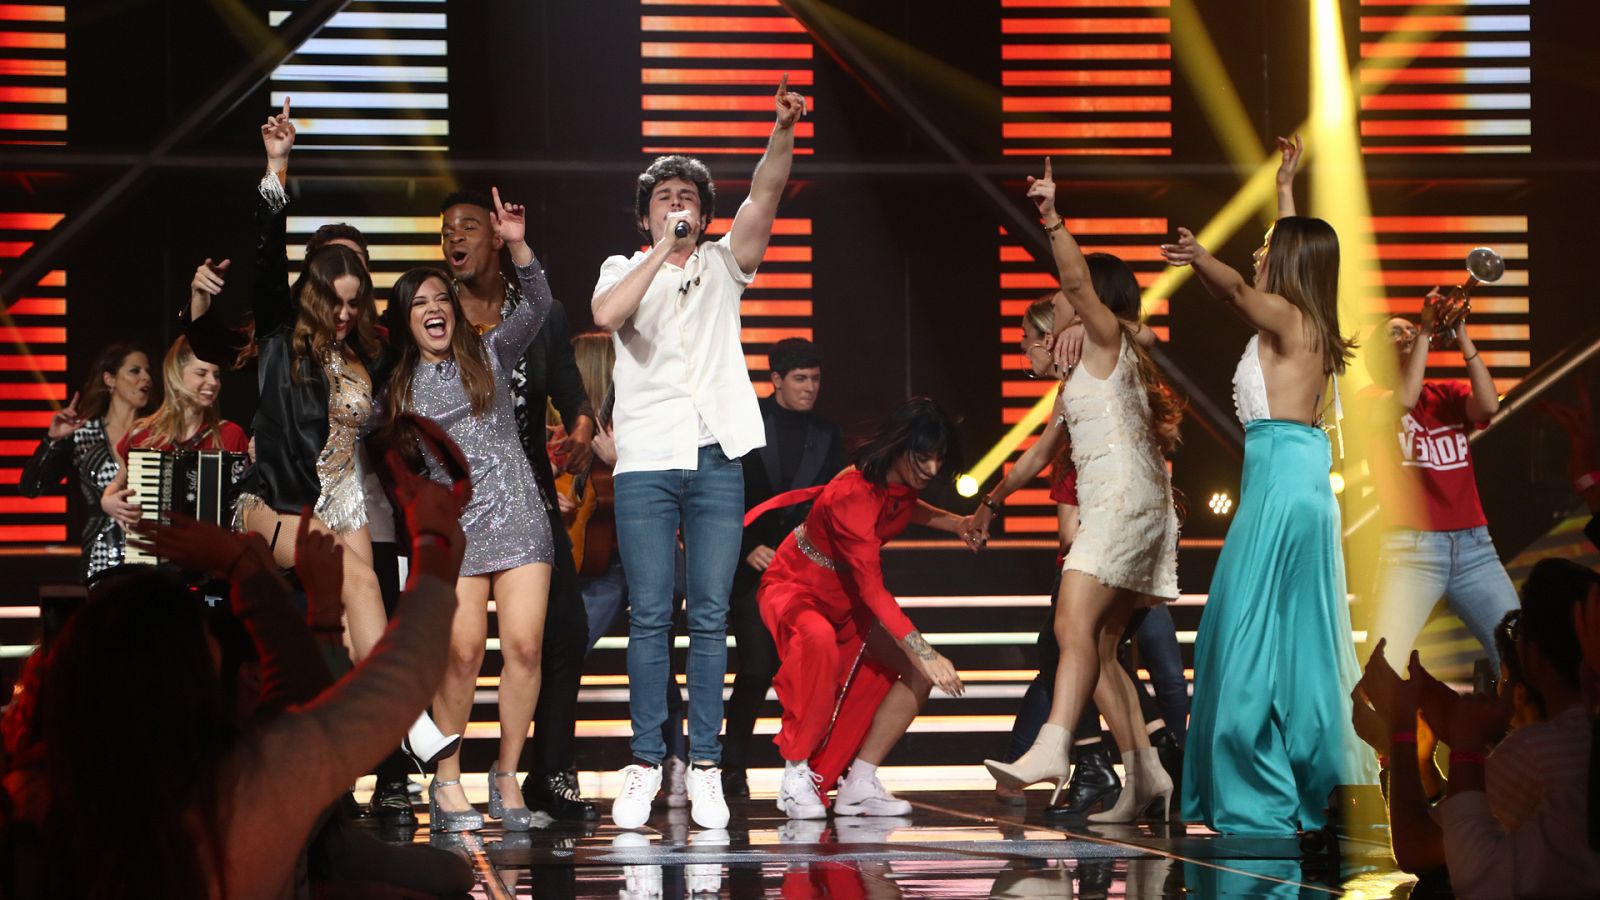 OT Eurovisión: "La venda", de Miki, la canción de España para Eurovisión 2019